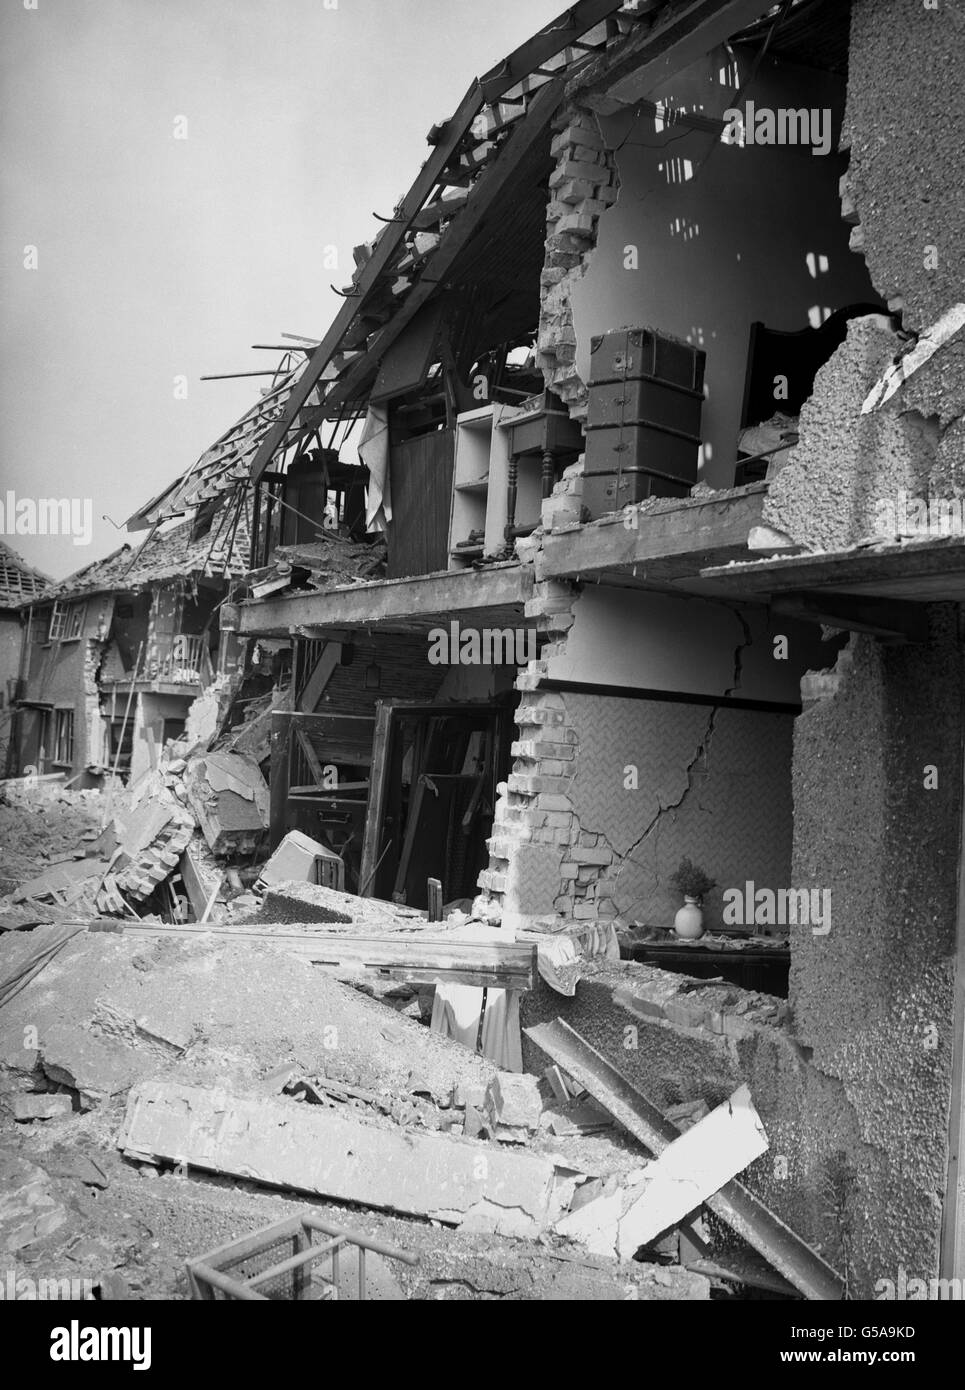 Dommages causés aux maisons dans le sud de l'Angleterre en 1945 après l'atterrissage d'une fusée allemande V-2.Le côté du bâtiment a été arraché, exposant l'intérieur de la maison.L'emplacement n'est pas identifié en raison de la censure en temps de guerre.Photo de la collection PA de la Seconde Guerre mondiale. Banque D'Images